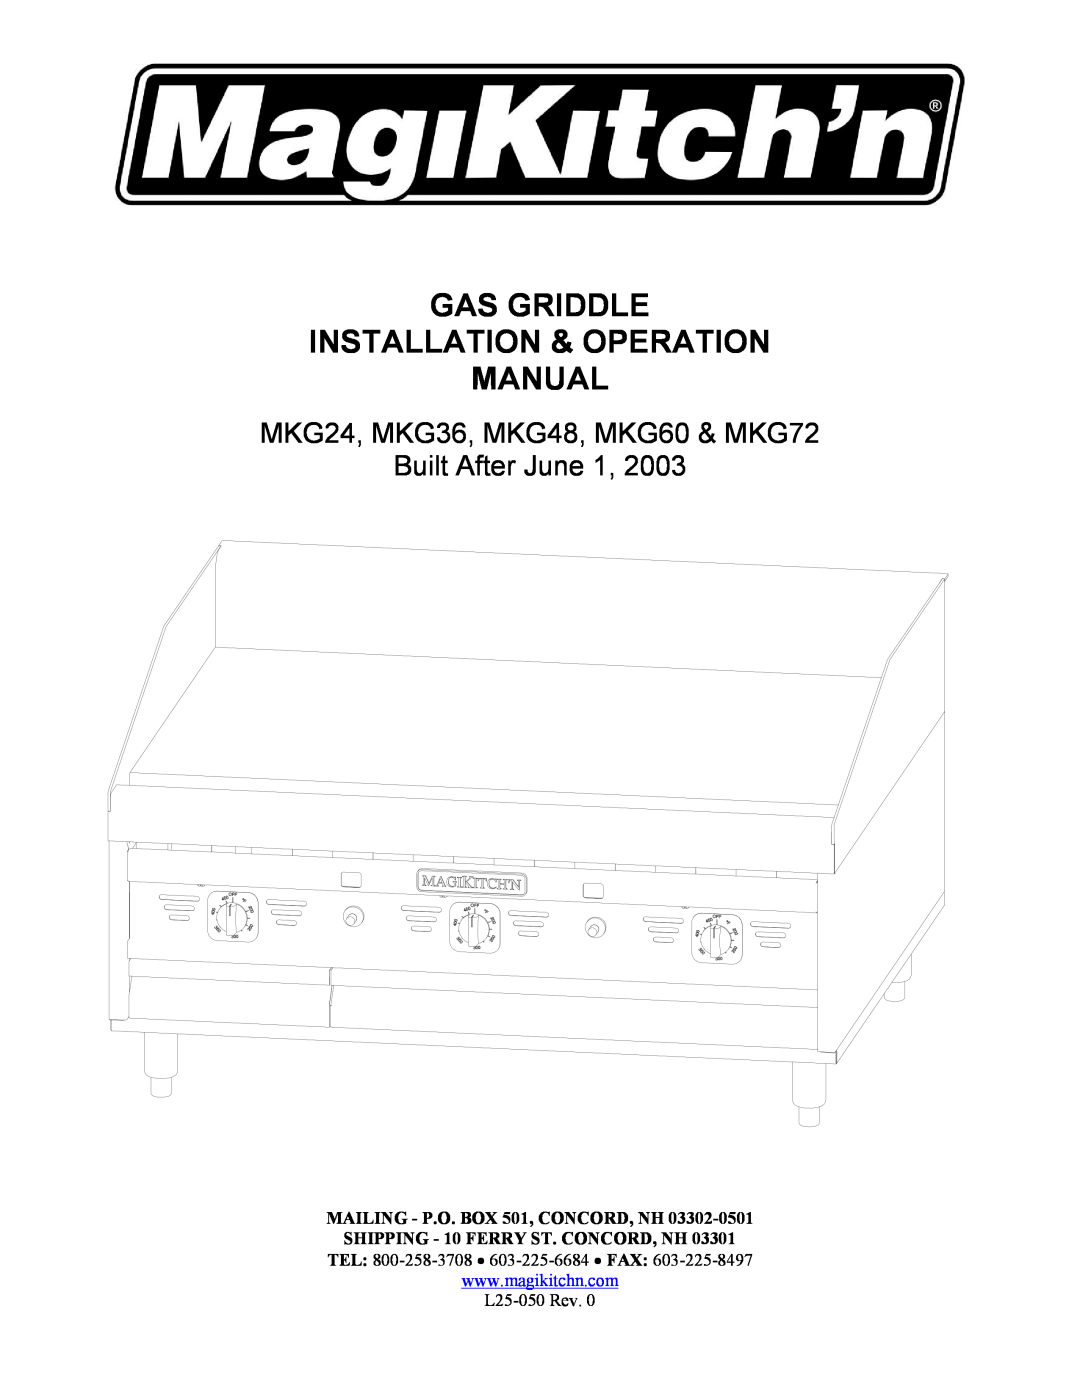 Magikitch'n pmn operation manual MKG24, MKG36, MKG48, MKG60 & MKG72, Built After June 